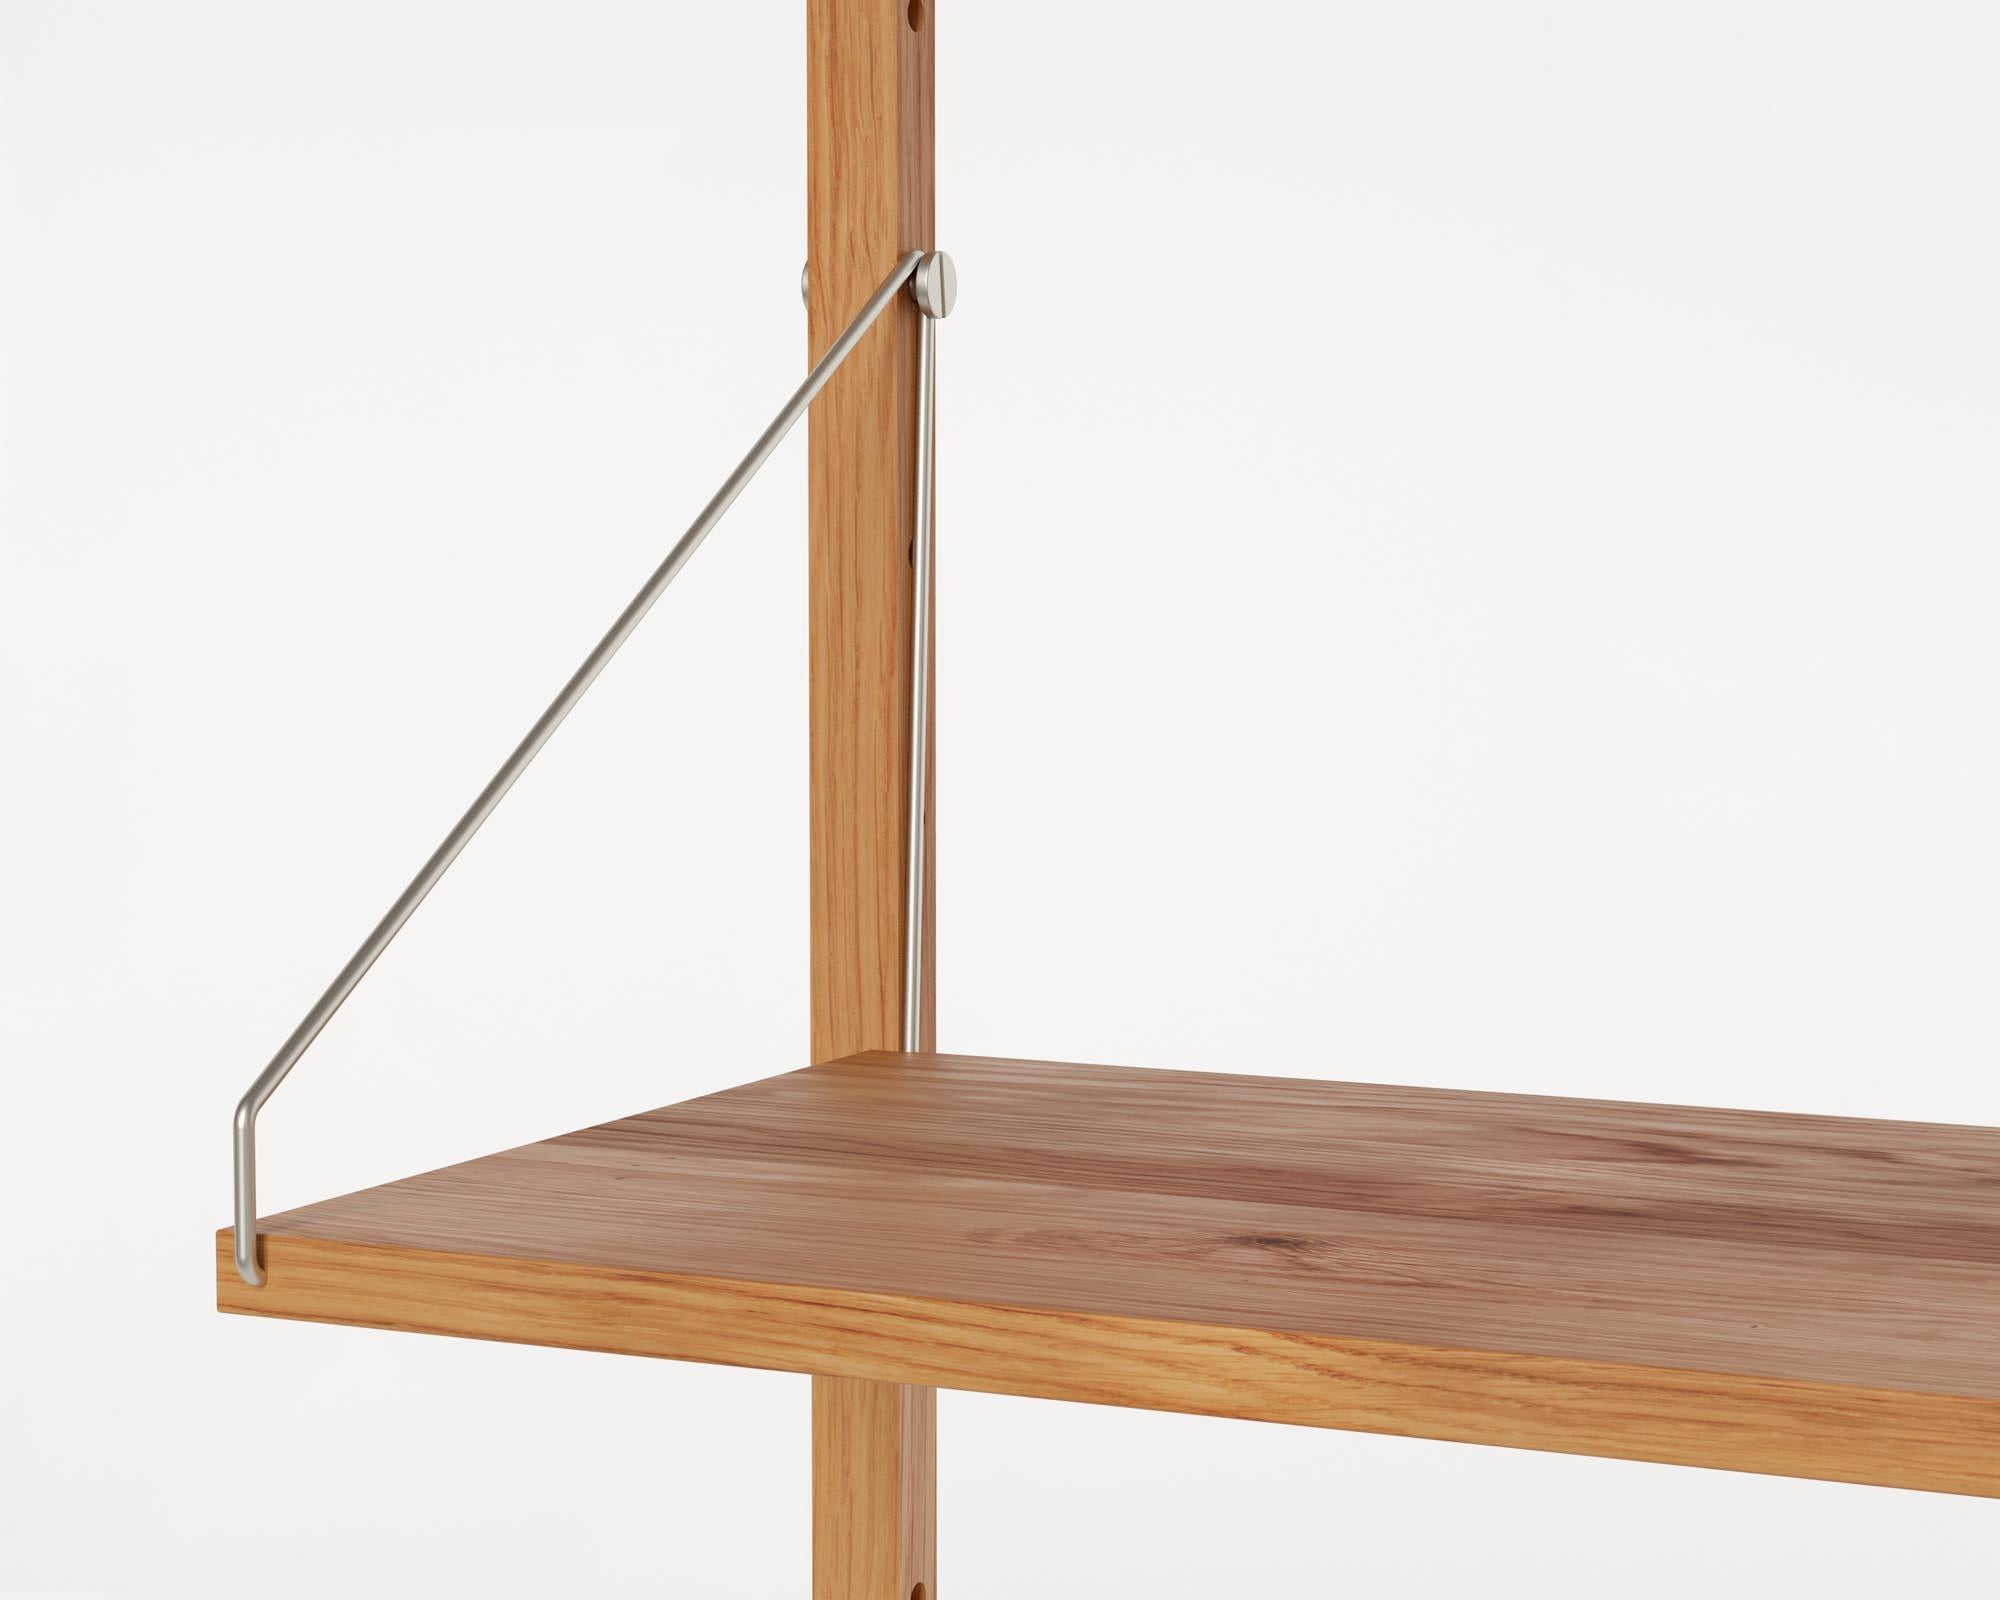 Zeitgenssisches minimalistisches Holz-Wandregal Bibliotheks-Doppelreihiges Regal (Geölt)